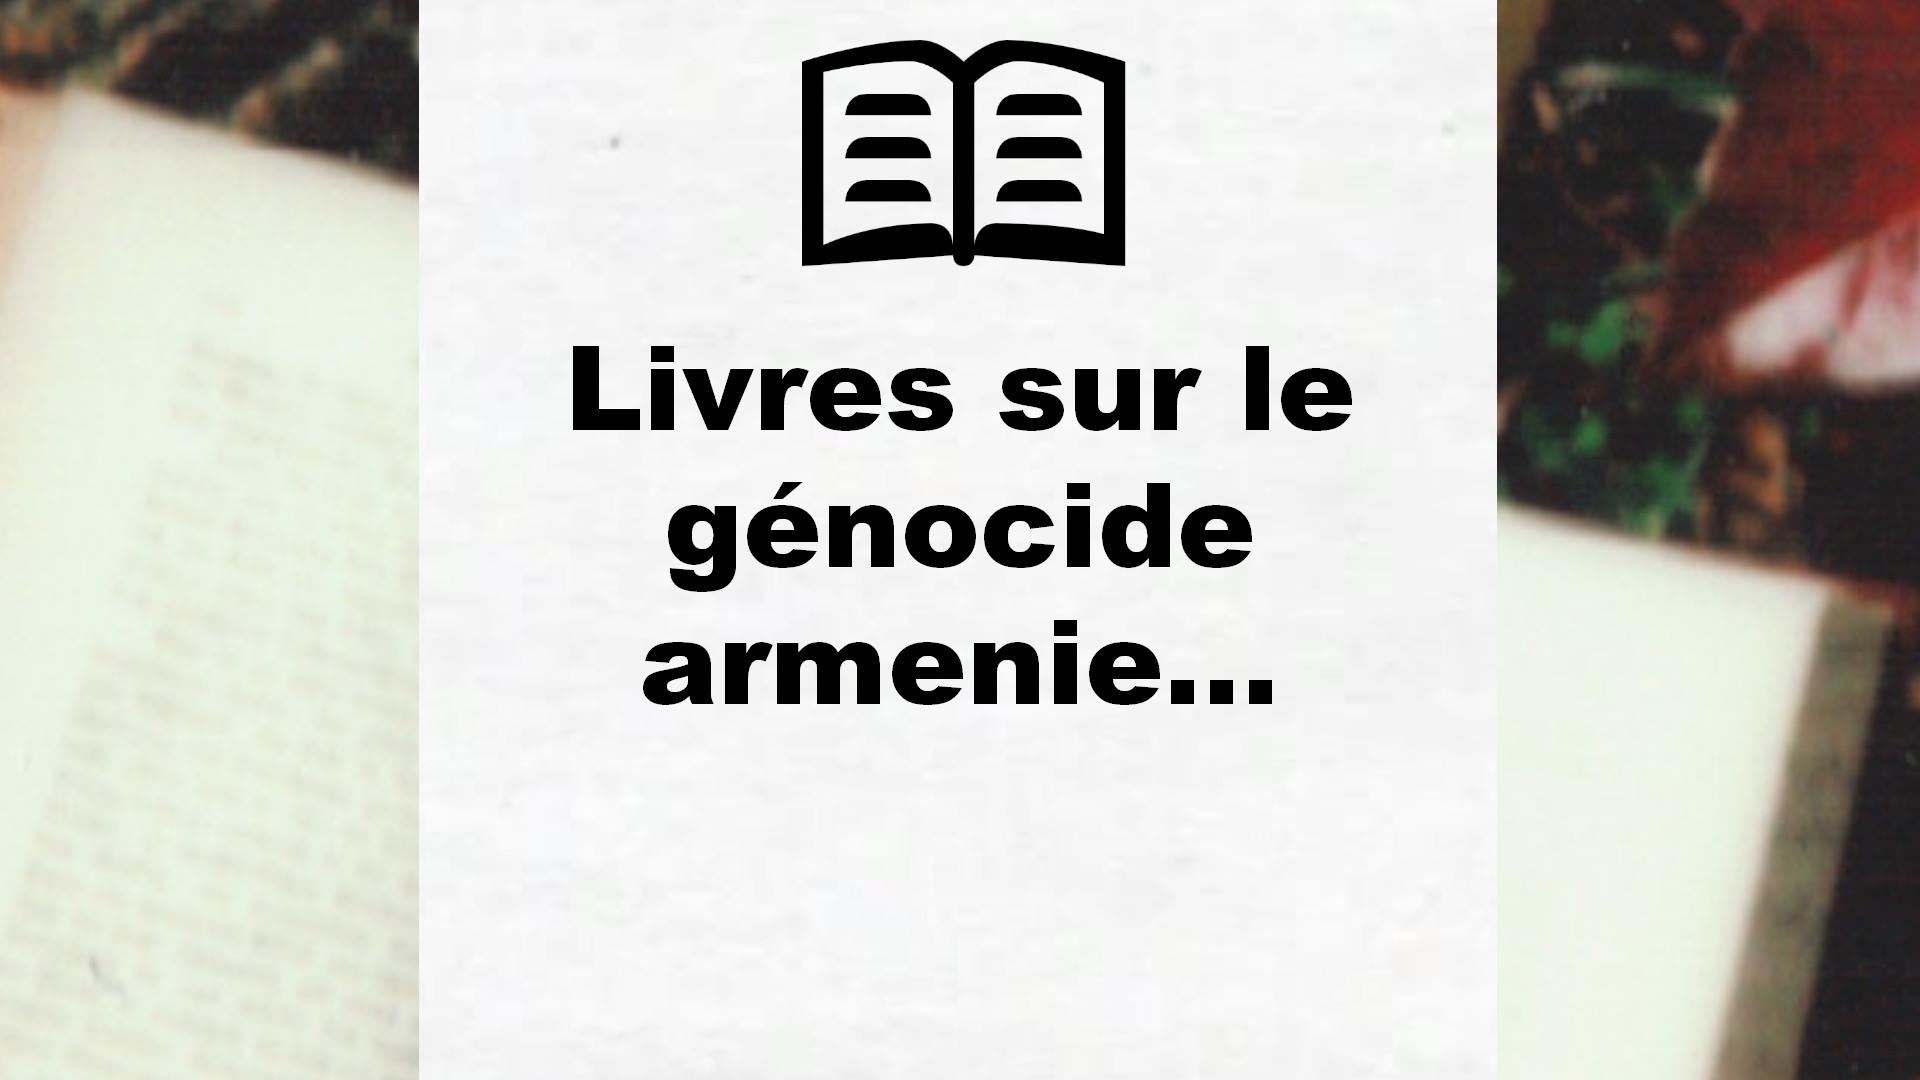 Livres sur le génocide armenien